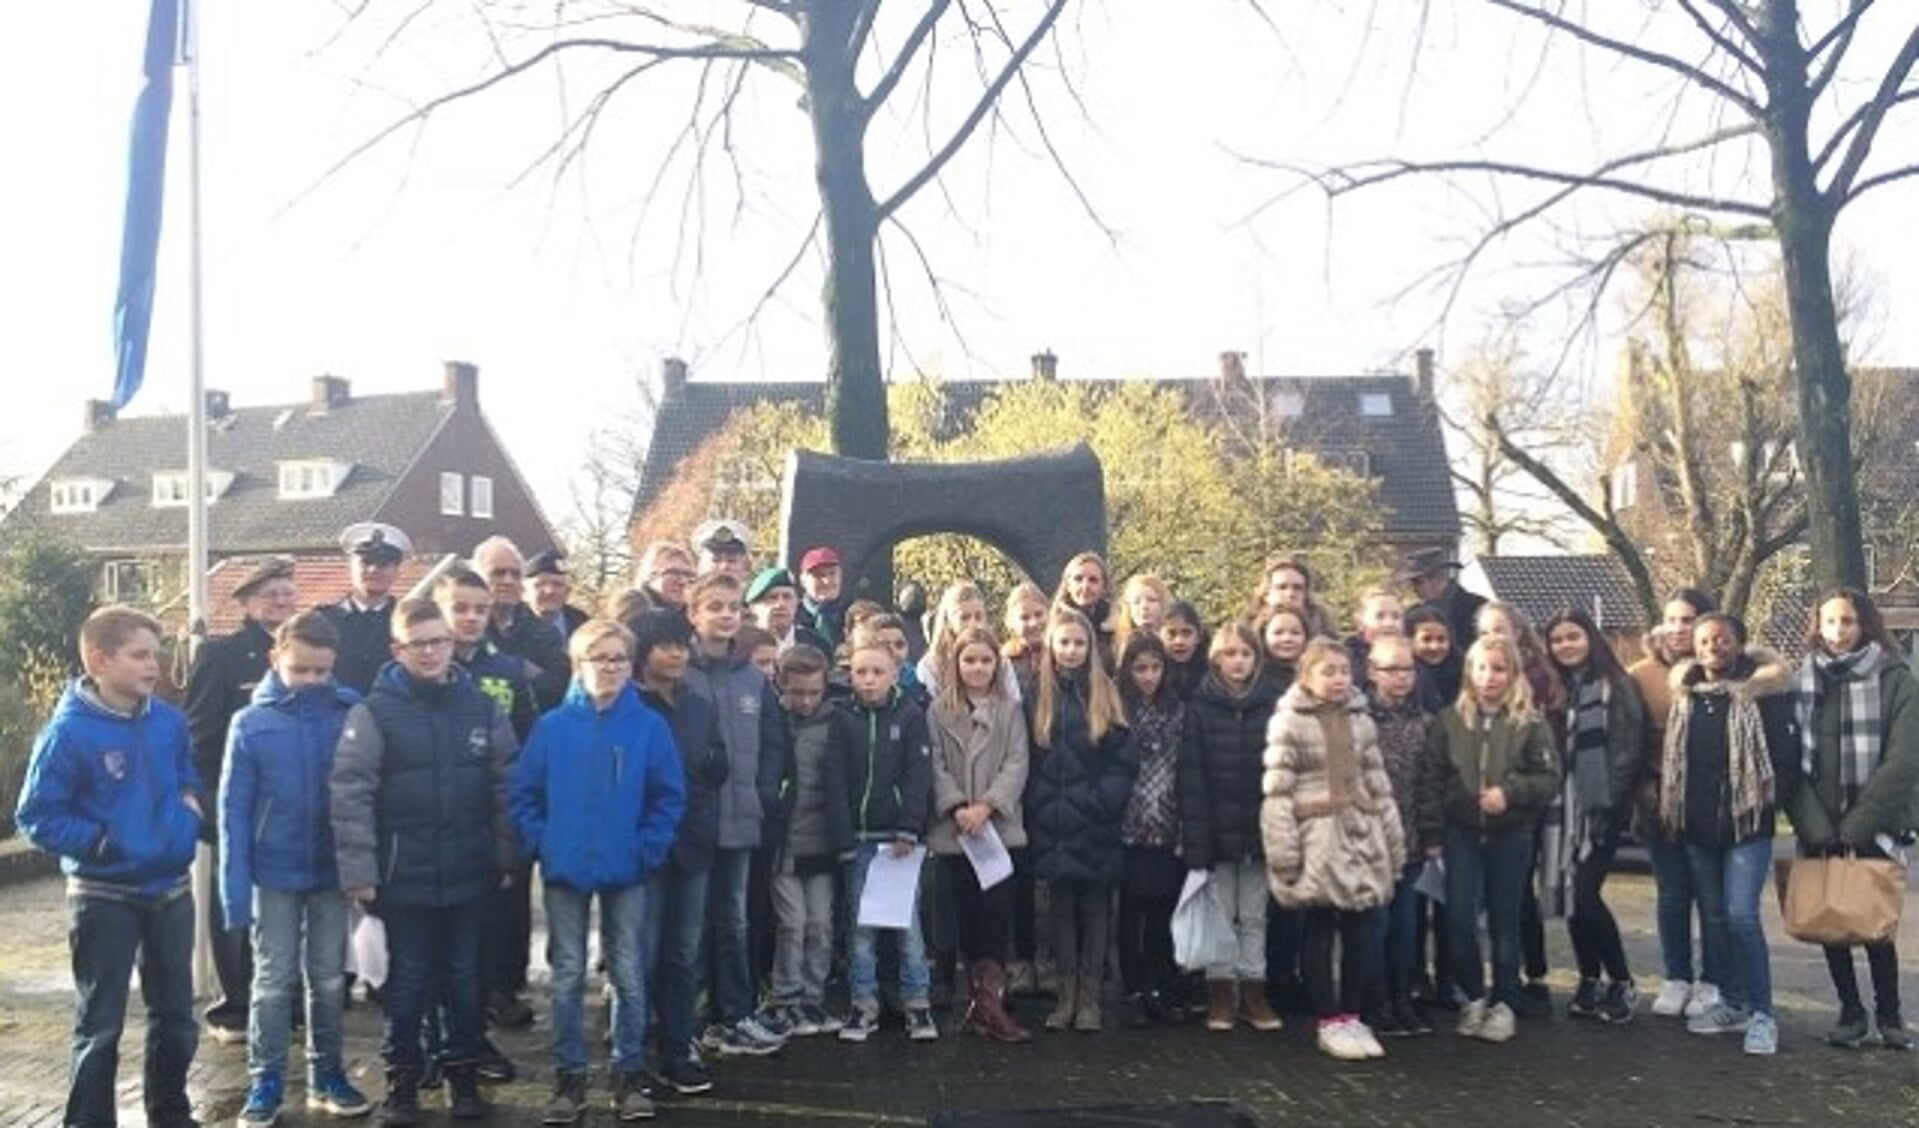 Leerlingen van groep 7 en 8 van de Margrietschool waren samen met burgemeester Van Rumund en enkele leden van de stichting Joods Erfgoed naar het monument aan de Walstraat gekomen. (foto: Diana Andeweg)